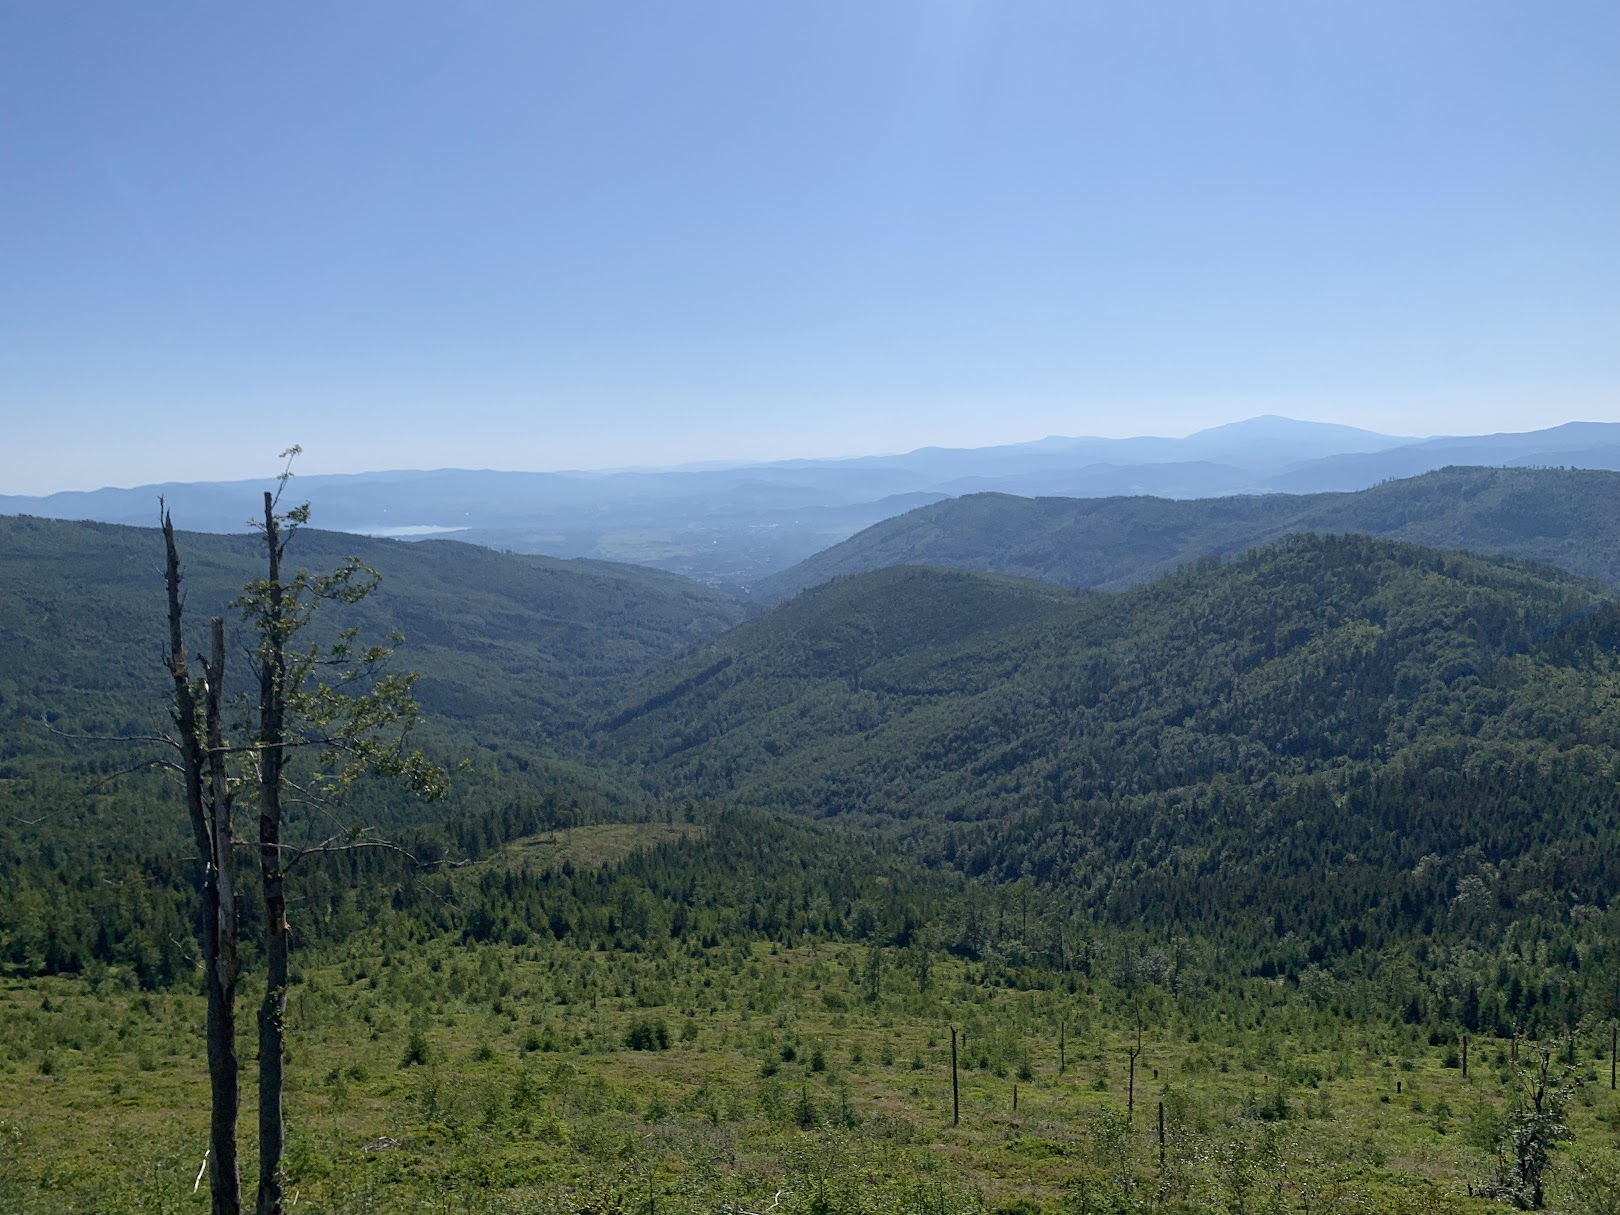 Widok z Malinowskiej Skały na wschód. Po prawej, najwyższa na horyzoncie - Babia Góra. W dole Kotlina Żywiecka